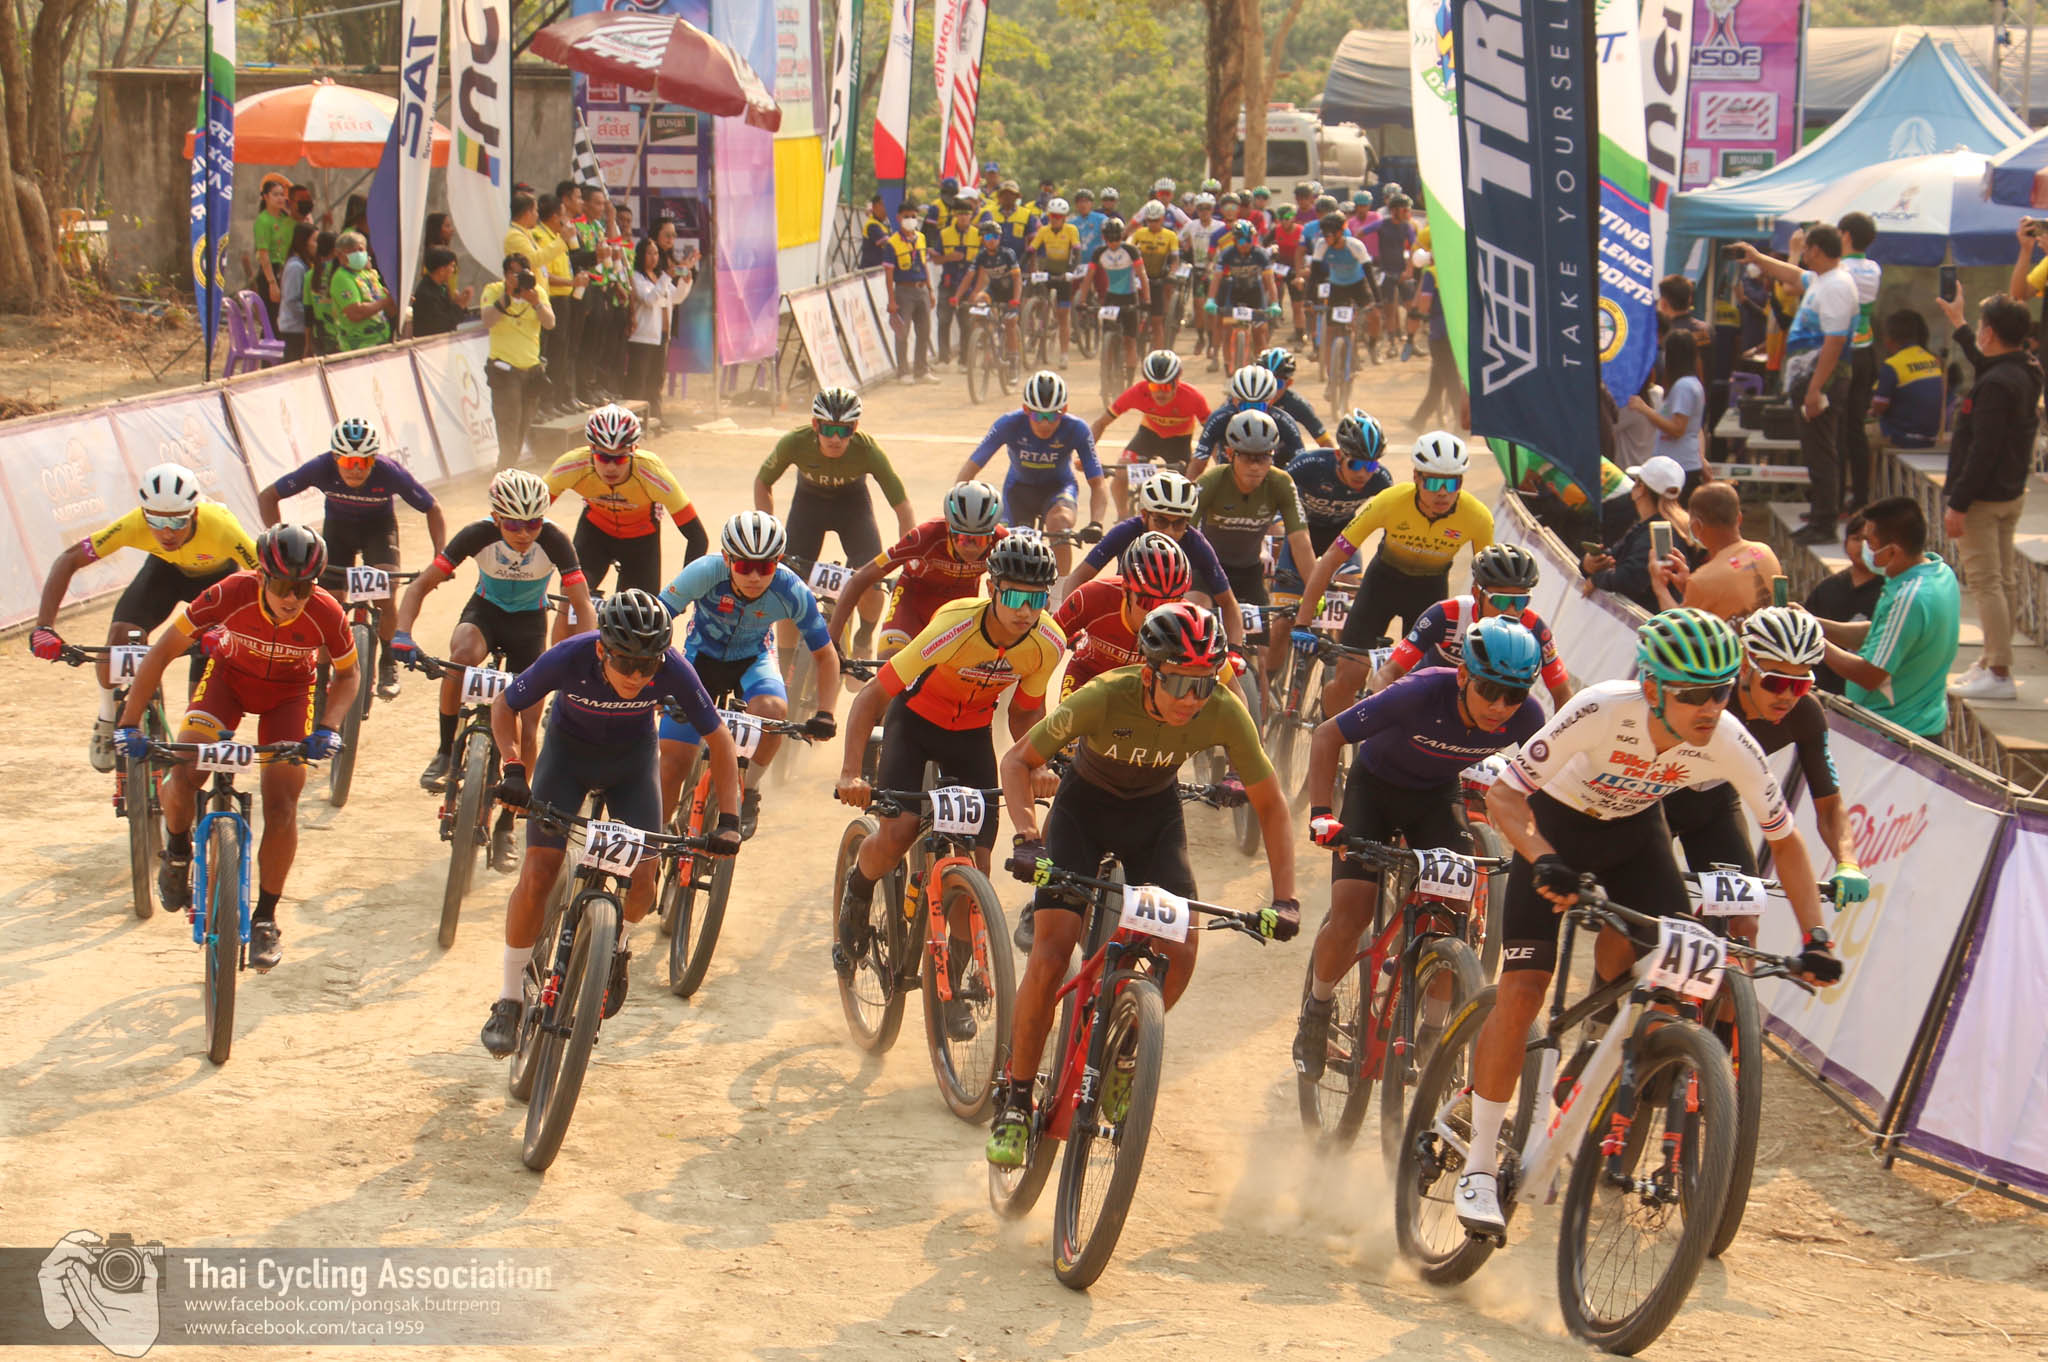 การแข่งขันจักรยานประเภทถนน ชิงแชมป์ประเทศไทย ชิงถ้วยพระราชทานฯ และการแข่งขันจักรยานเมาเท่นไบค์ ชิงแชมป์ประเทศไทย ชิงถ้วยพระราชทาน ฯ สนามที่ 4 ประจำปี 2566